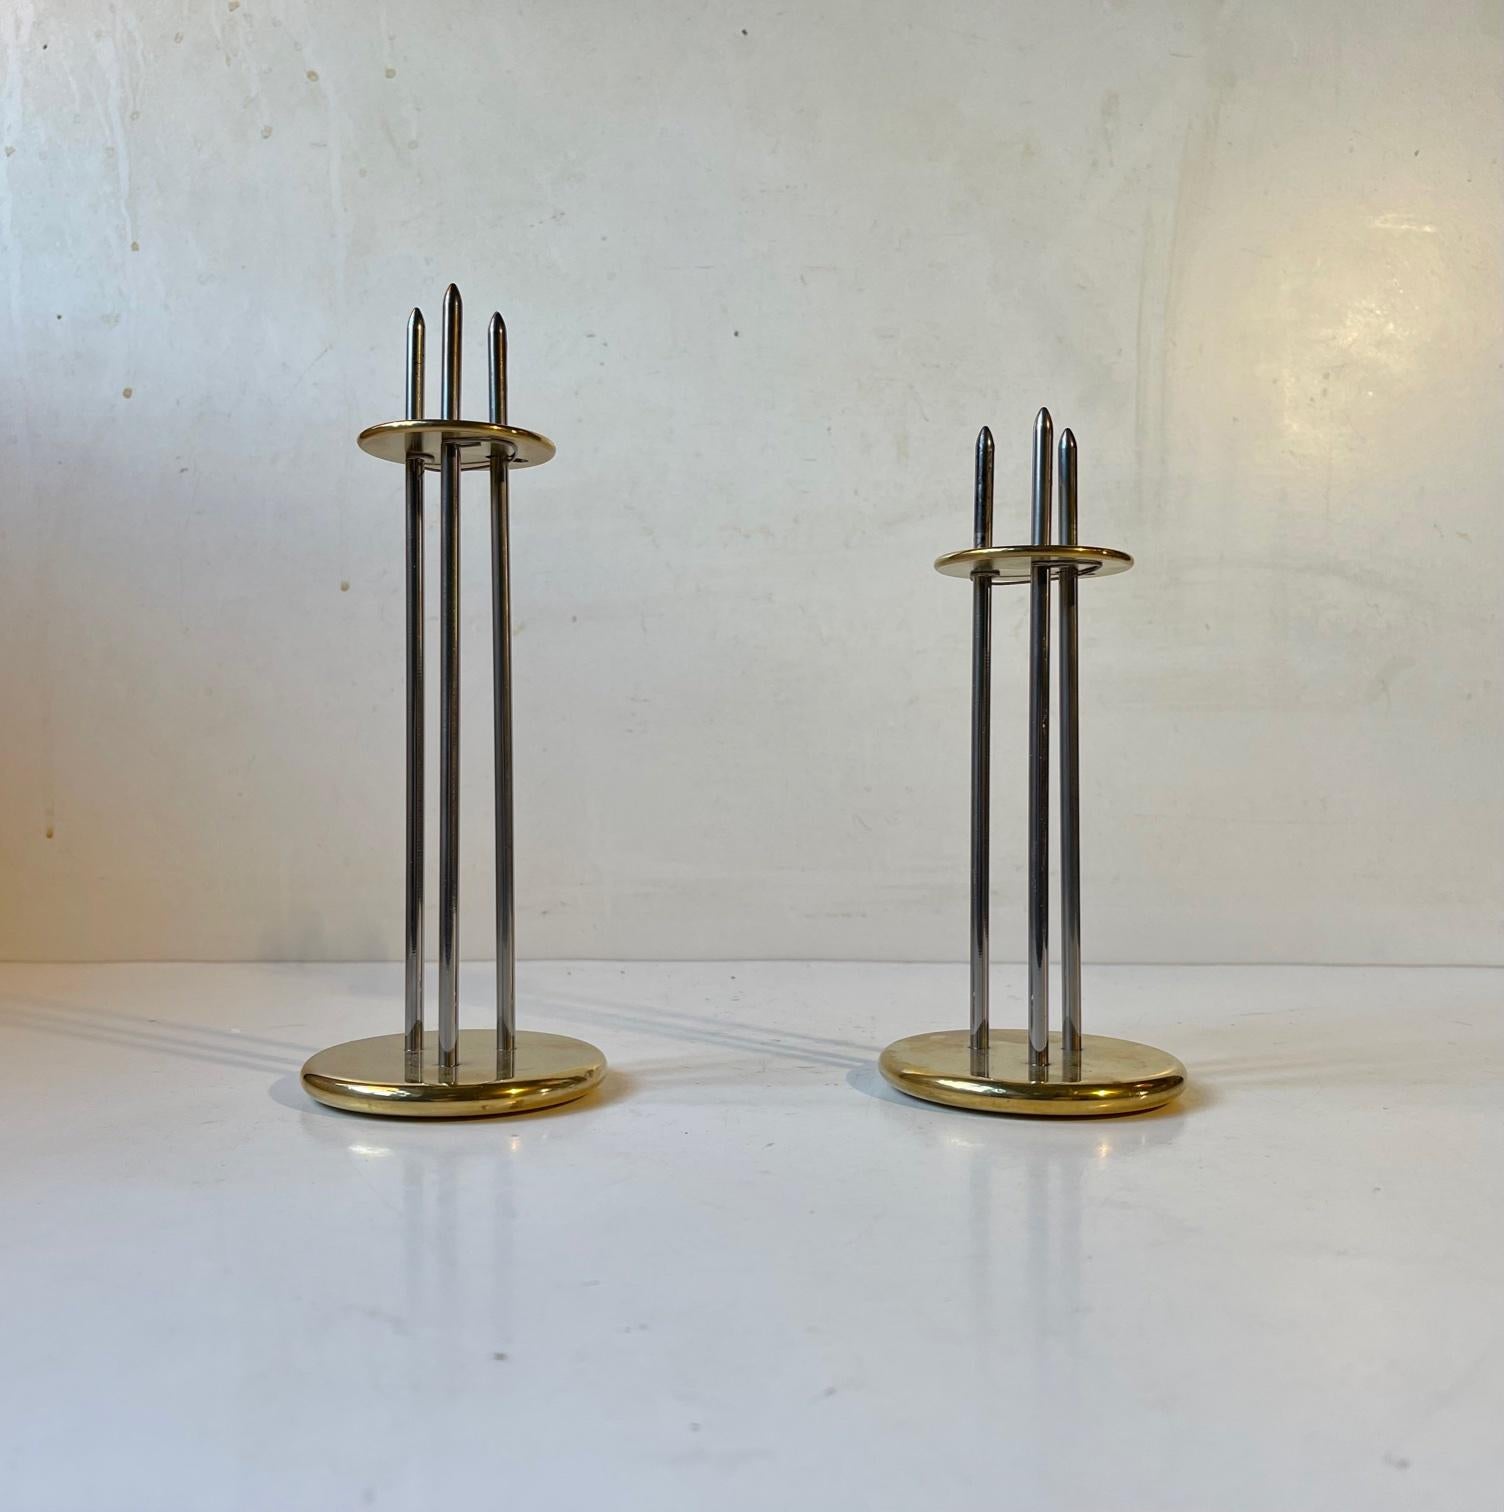 Un ensemble de bougeoirs réglables en hauteur pour des bougies de taille normale. Conçu par l'ingénieur danois Peter Seidelin Jessen pour sa propre société Delite dans les années 1980 ou 1990. Ils sont fabriqués en acier inoxydable poli miroir et en